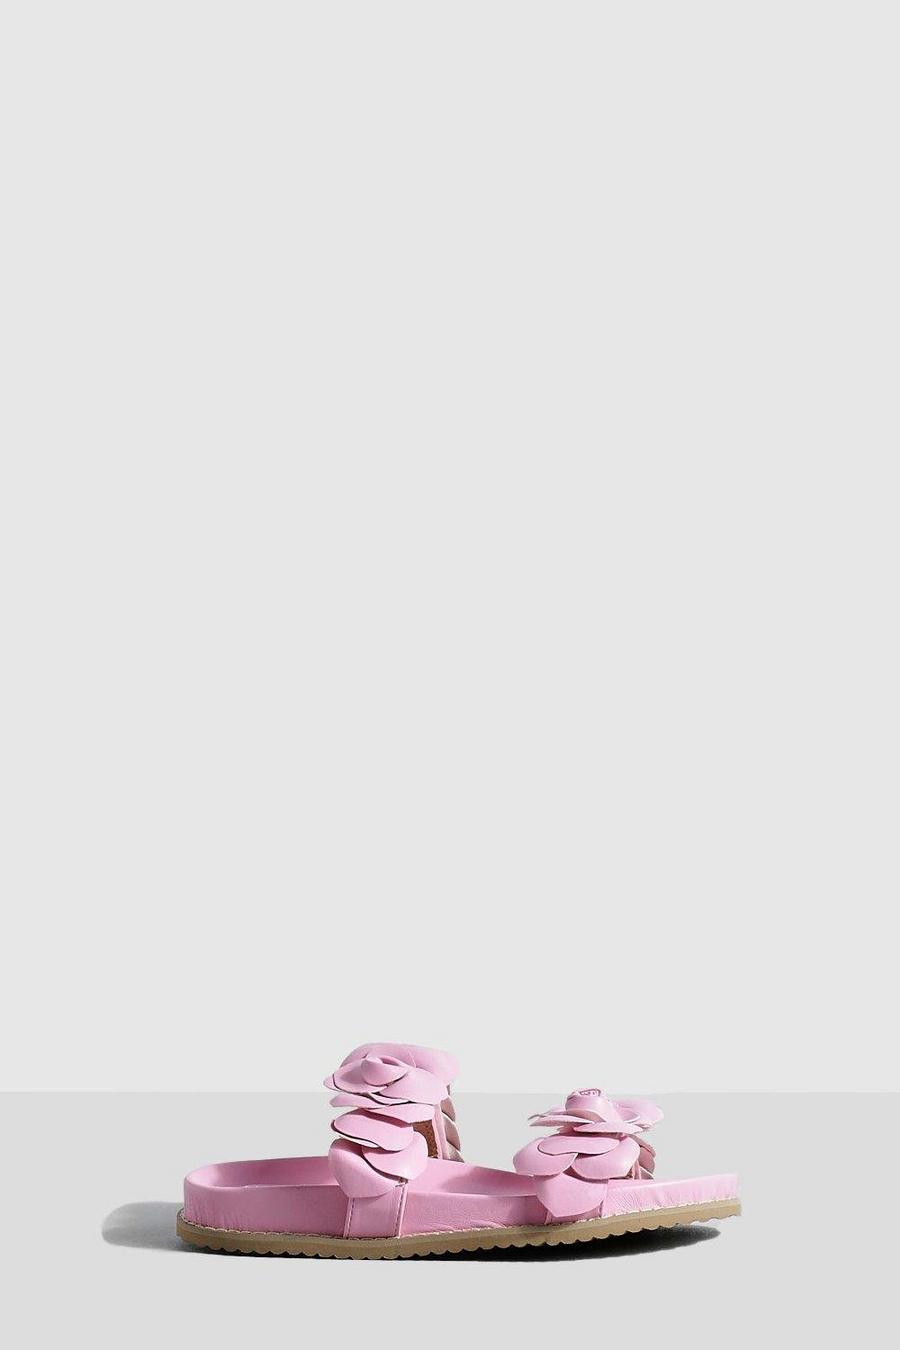 Sandali Espadrillas con fascette a fiori, Pink rosa